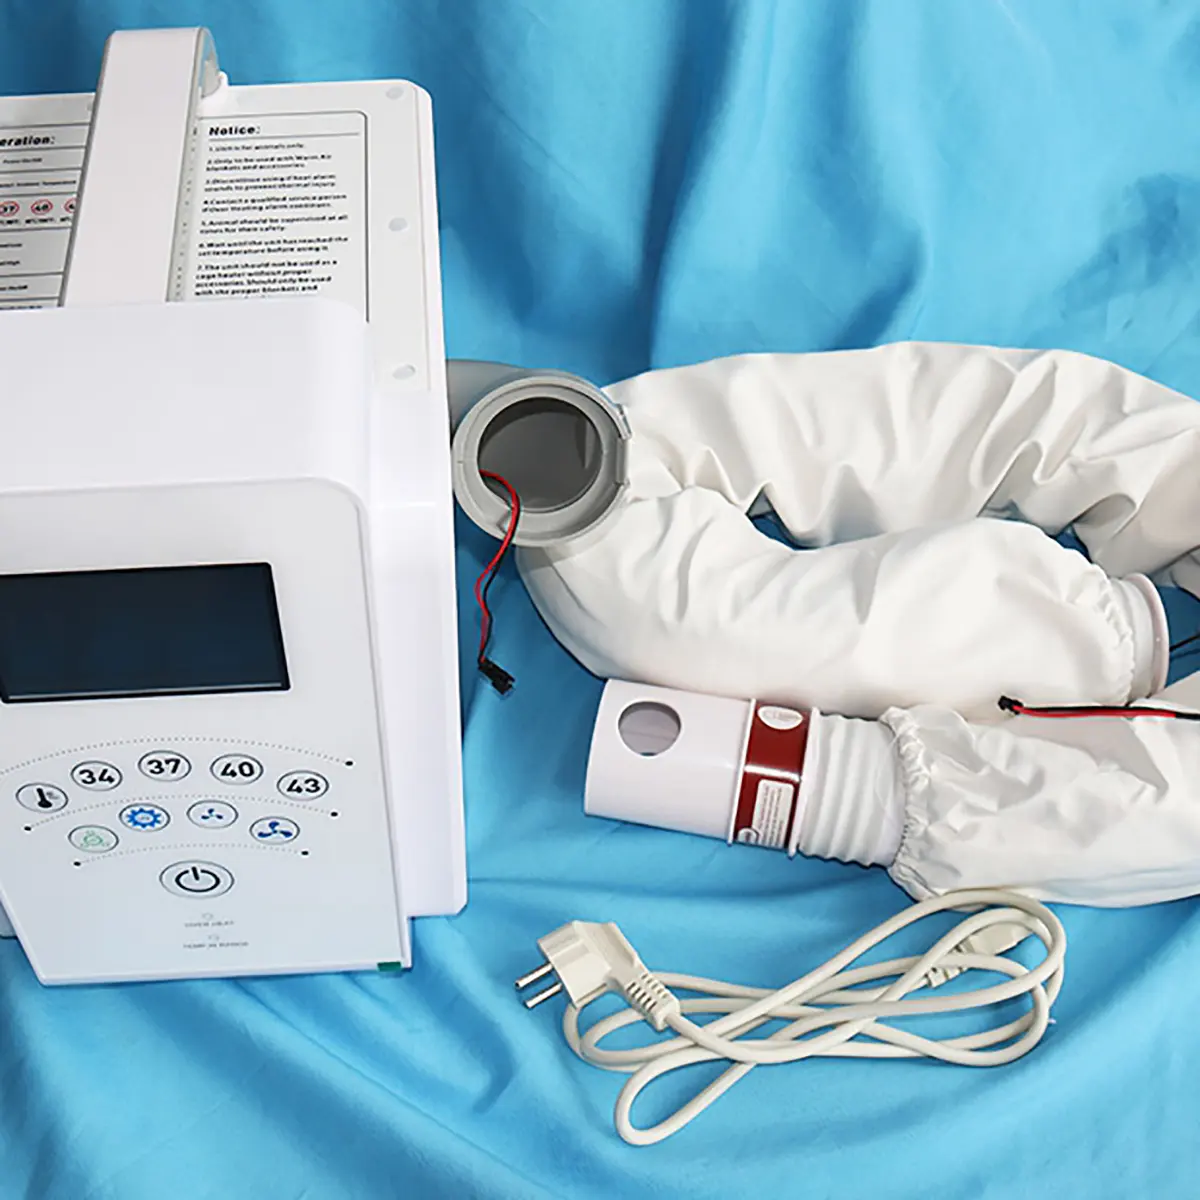 पशु चिकित्सा क्लिनिक में उपयोग के लिए कंबल के साथ पशु चिकित्सा सर्जिकल स्वचालित एयर वार्मिंग सिस्टम